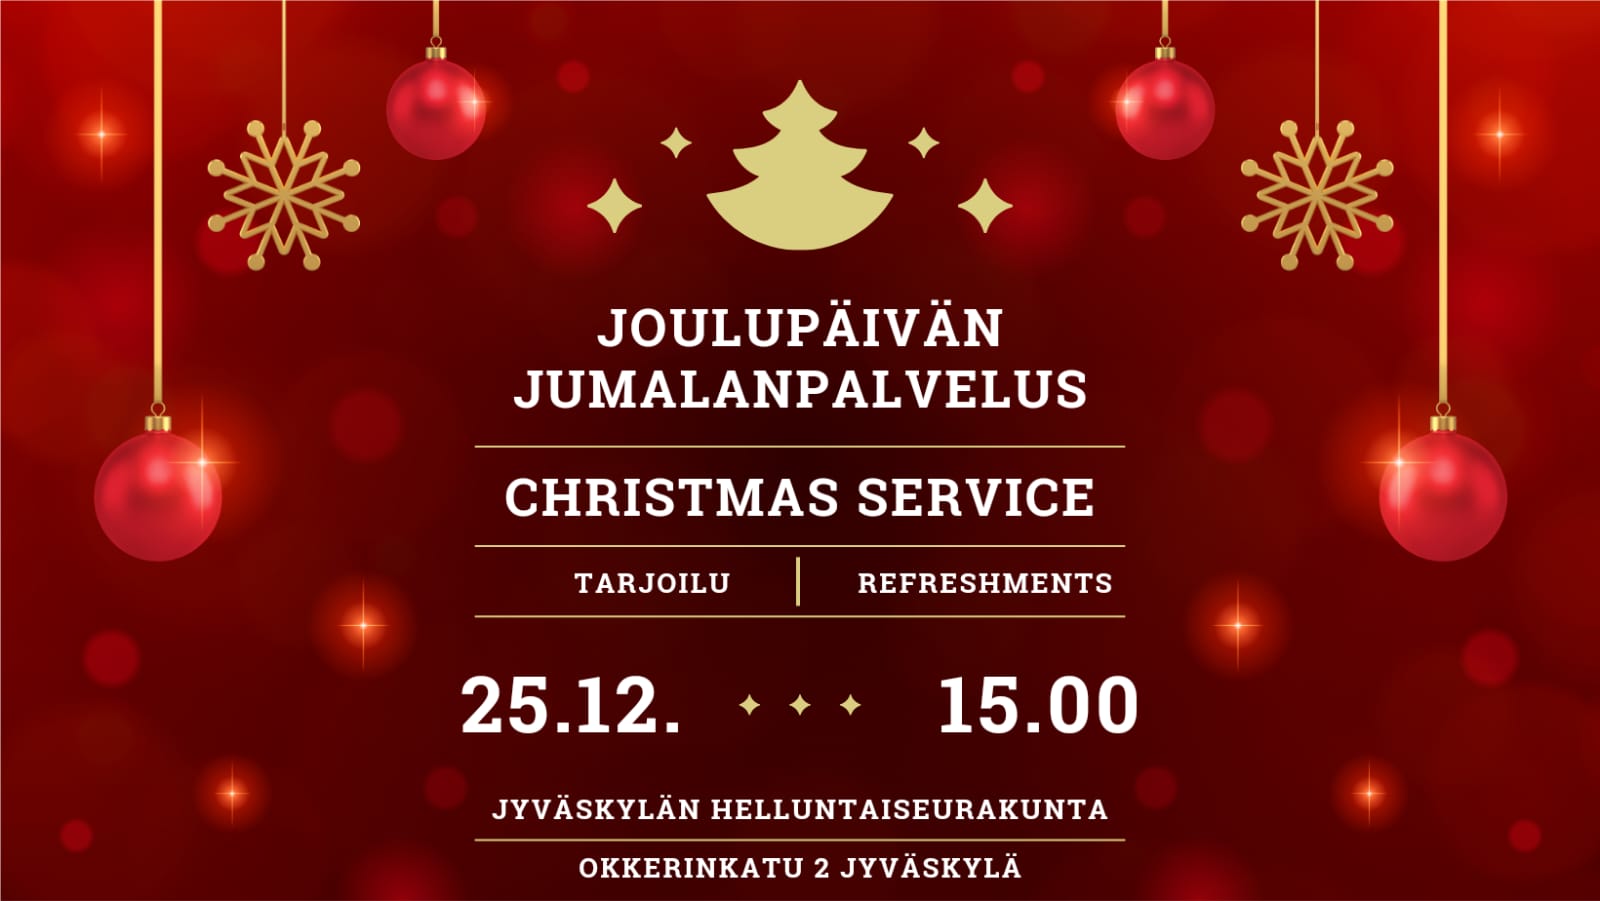 Joulupäivän jumalanpalvelus - Christmas Service